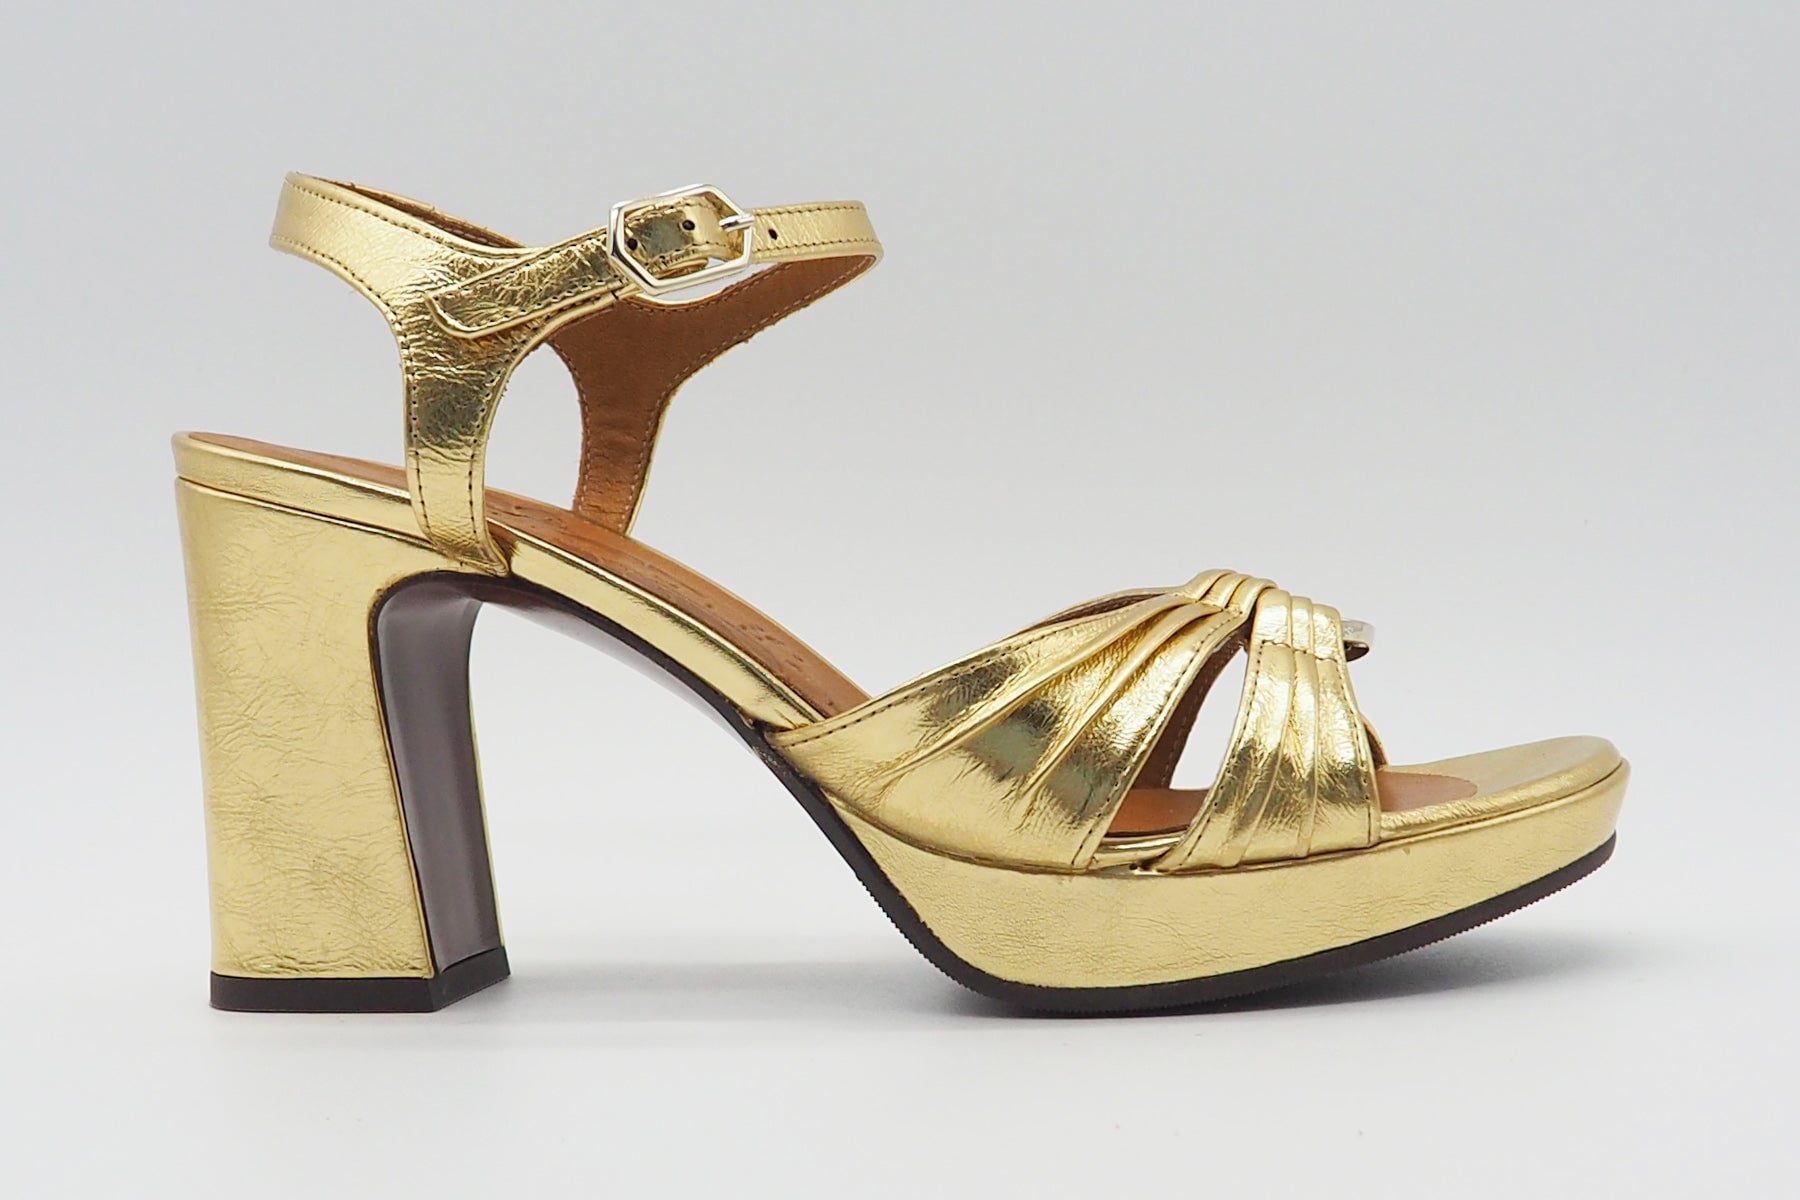 Damen Sandale aus Metallicleder in Gold - Absatz 8,5cm Damen Sandalen Chie Mihara 